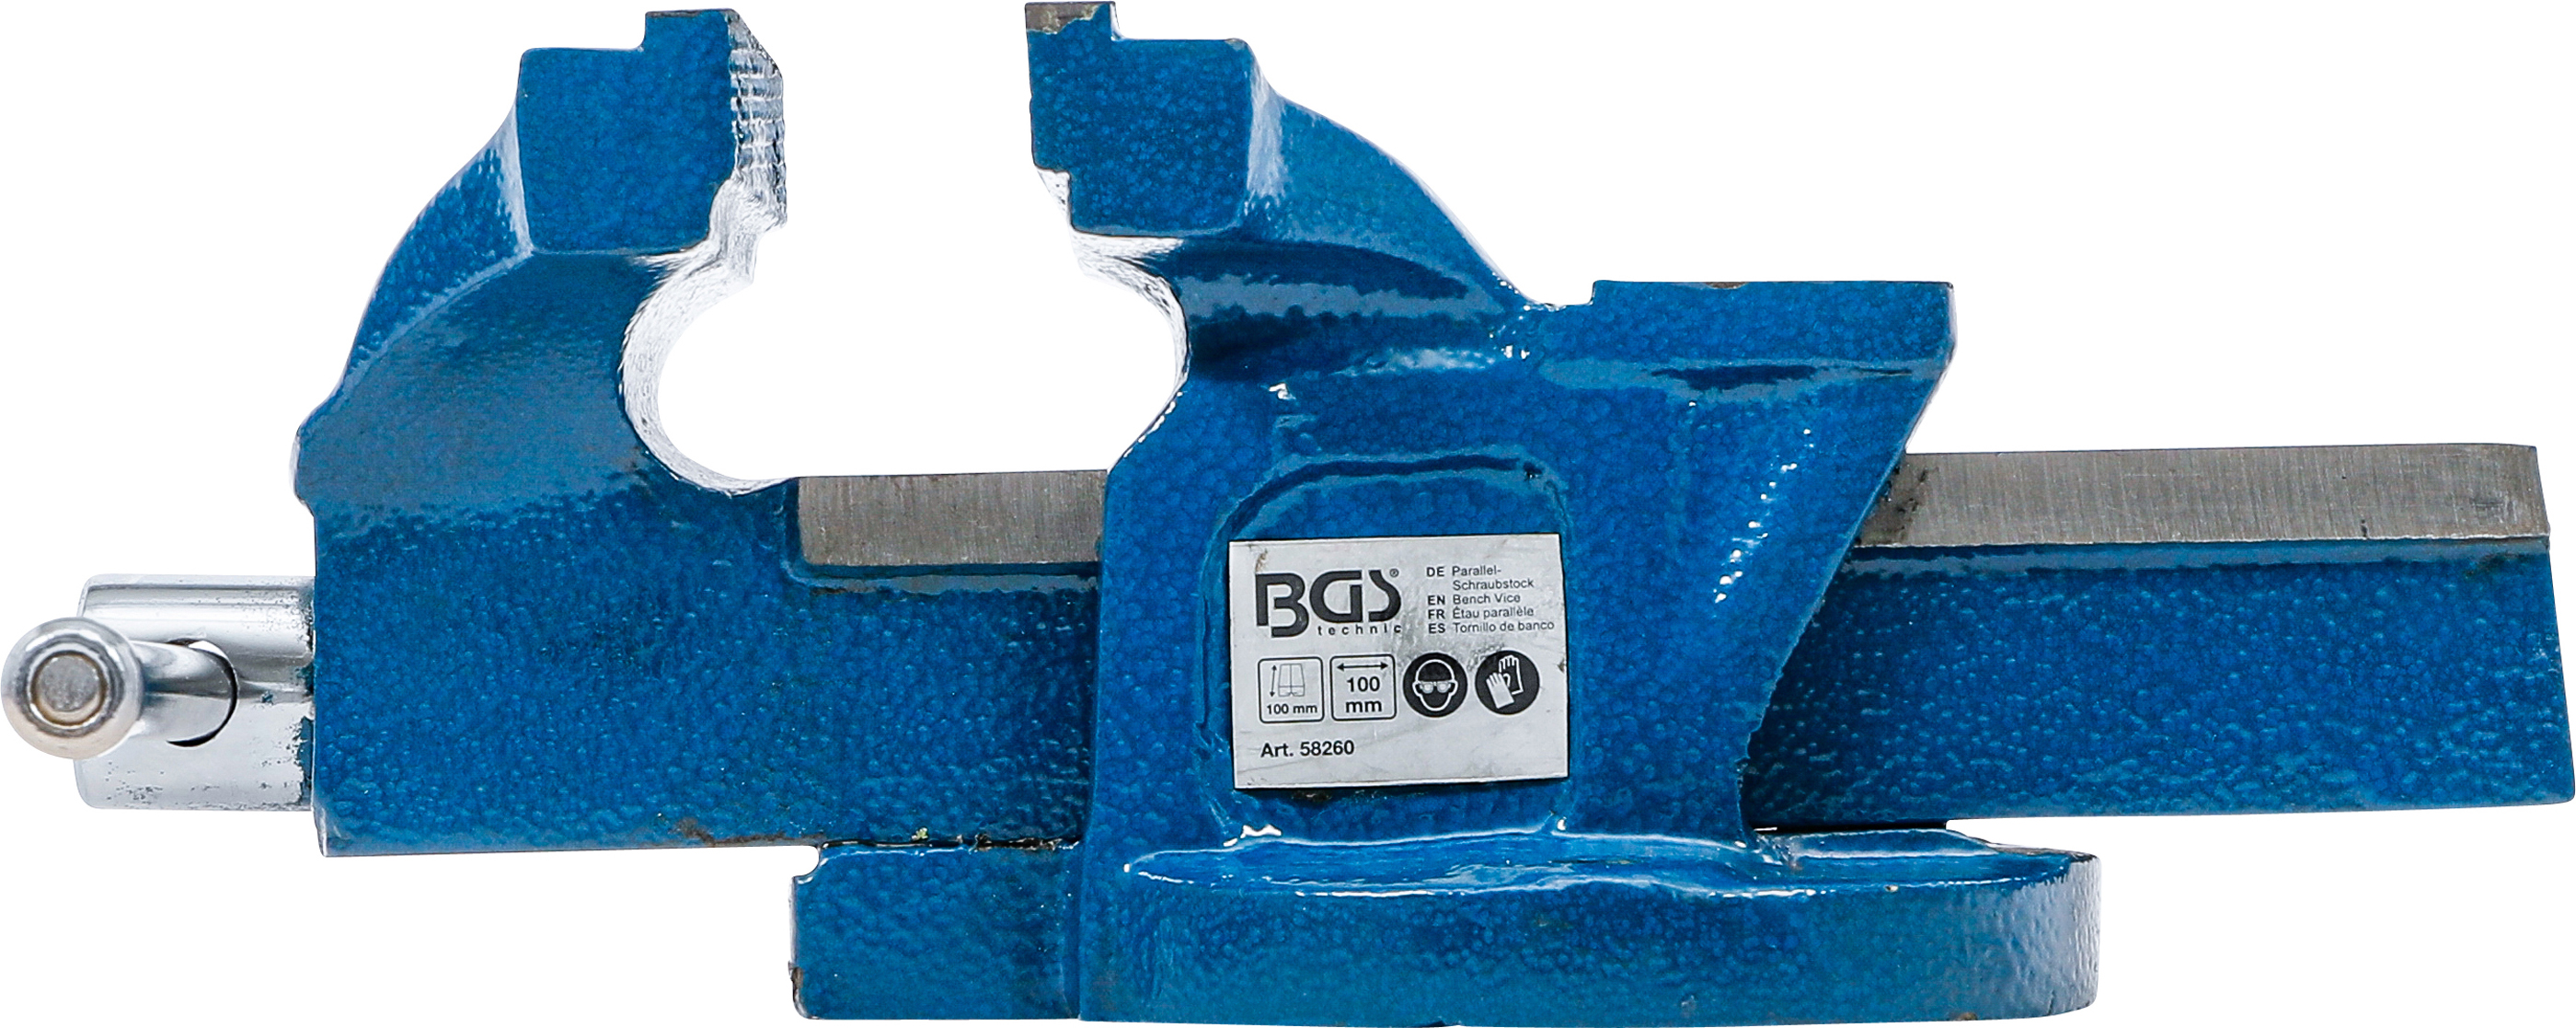 BGS Parallel-Schraubstock | 100 mm Spannbacken